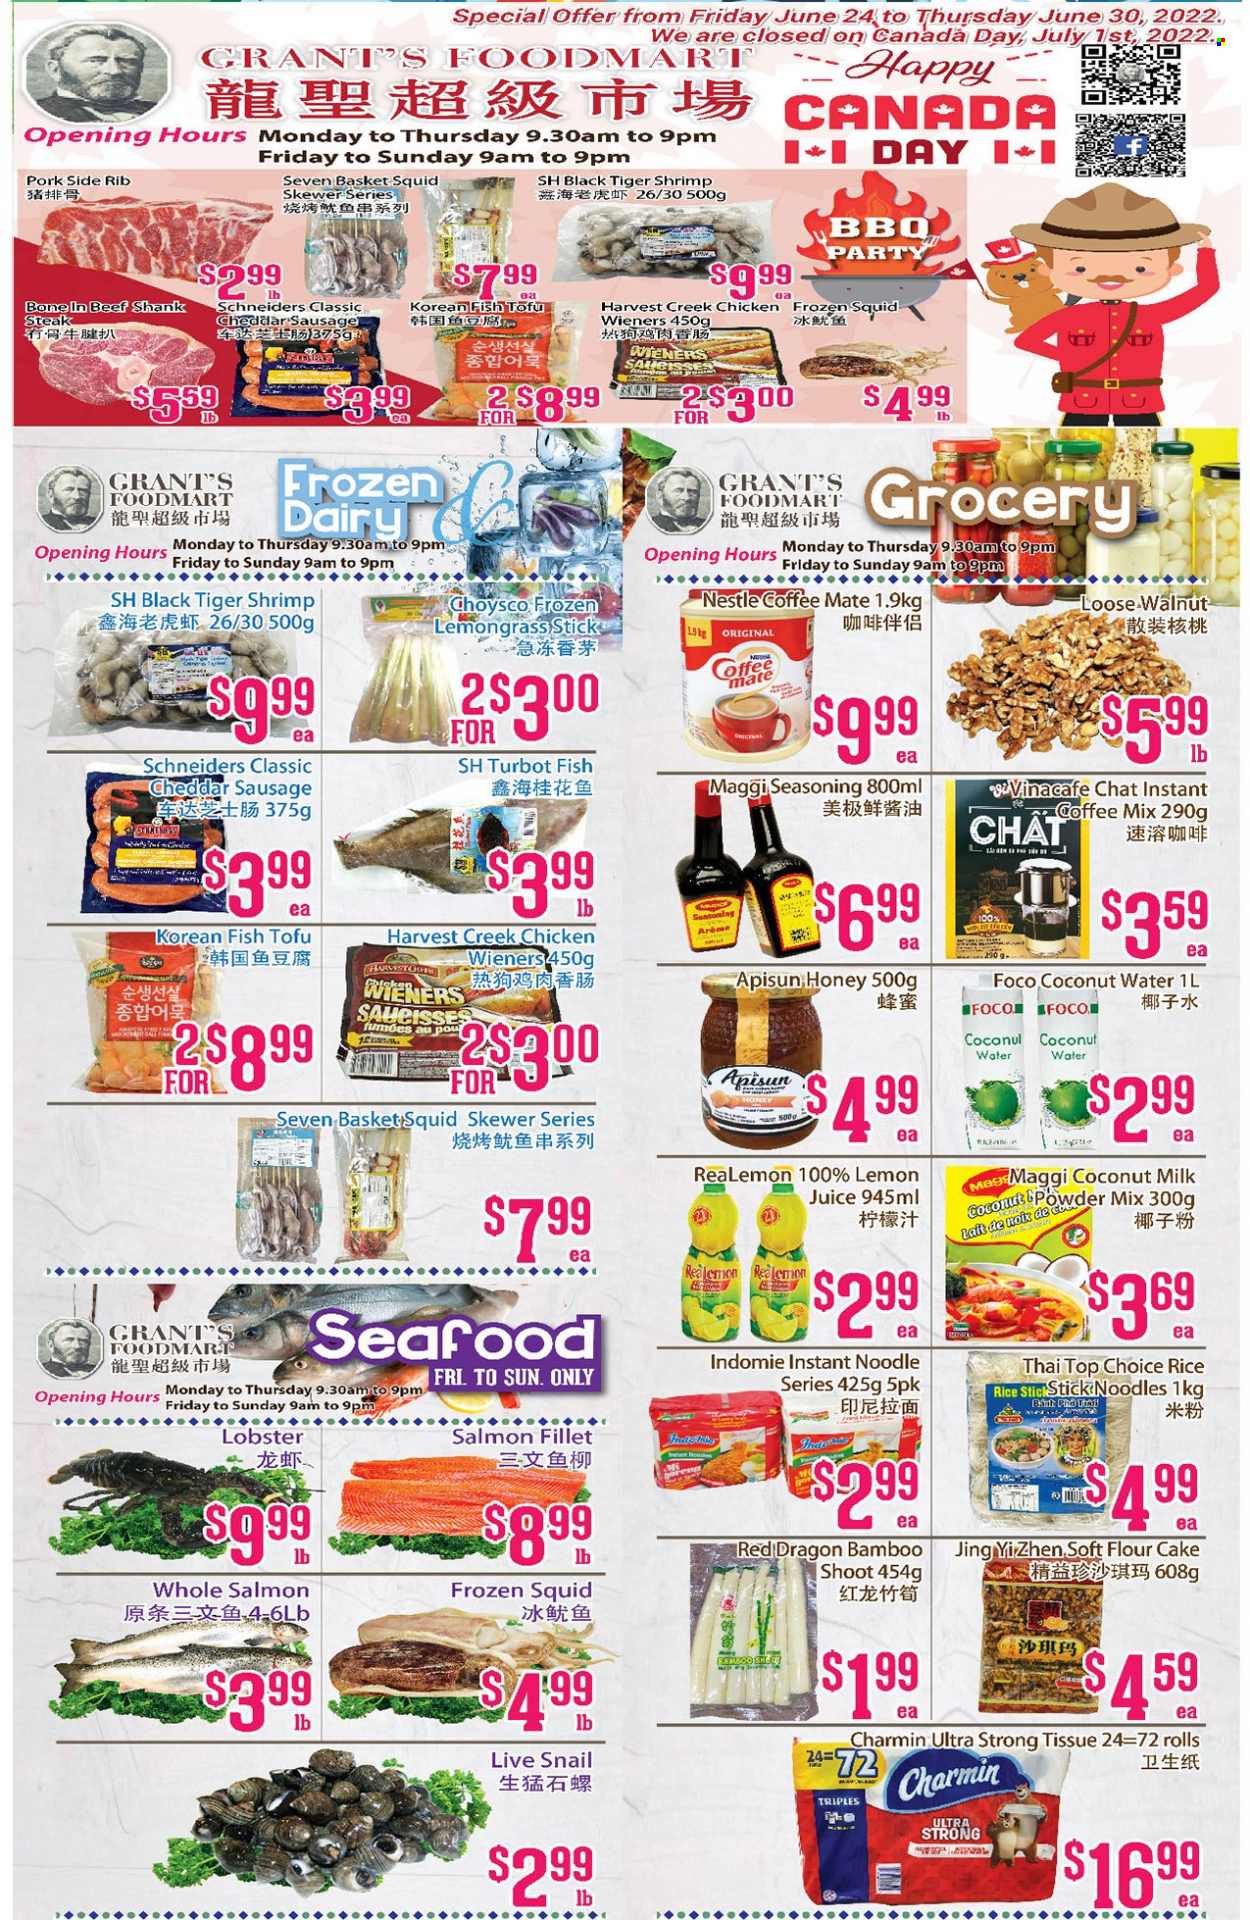 thumbnail - Circulaire Grant's Foodmart - 24 Juin 2022 - 30 Juin 2022 - Produits soldés - steak, saucisse, Nestlé, lait, LU, tofu. Page 2.